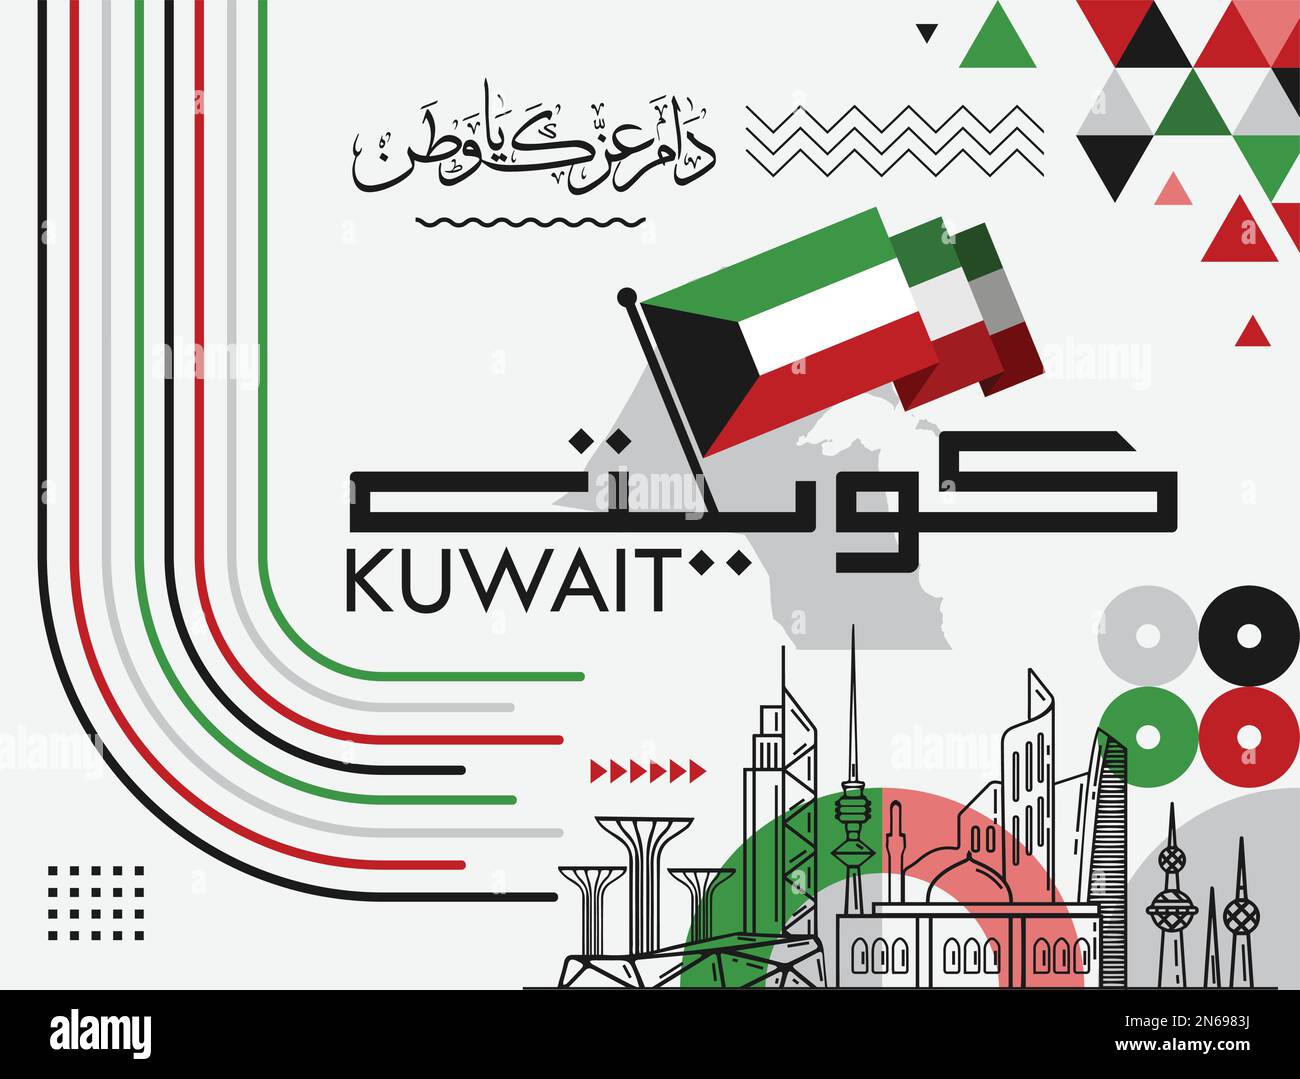 Kuwait-Nationalbanner mit seinem Namen in arabischer Kalligraphie. Kuwaitische Flaggenfarben mit weißem Hintergrund und abstraktem geometrischem, modernem Design. Stock Vektor